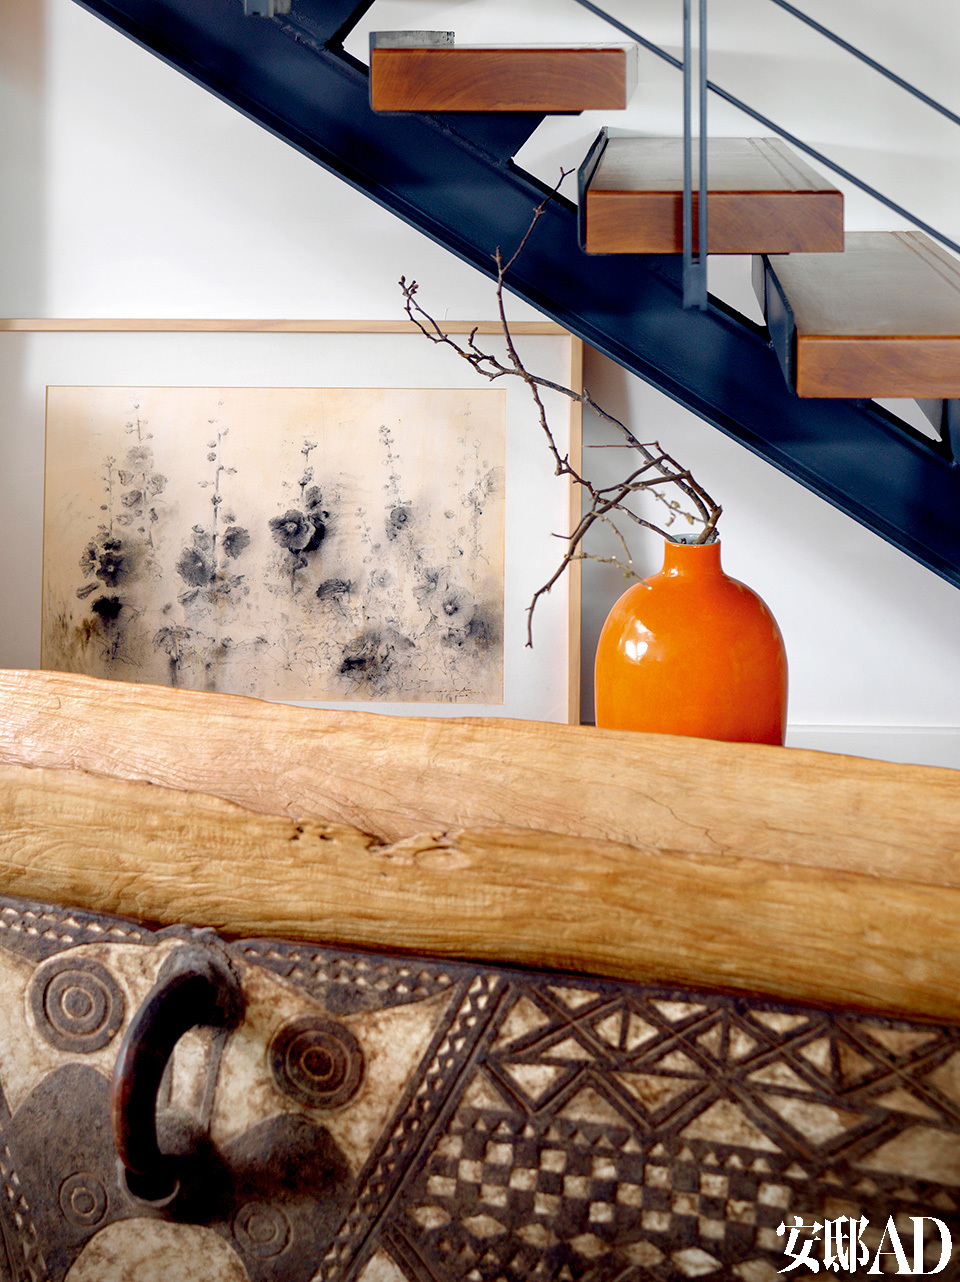 客厅一角处摆放着来自巴布亚新几内亚的独木舟和木刻面具。高瓷瓶是当代艺术品，背后的炭笔画是香港画家梁兆熙2010年的作品。
